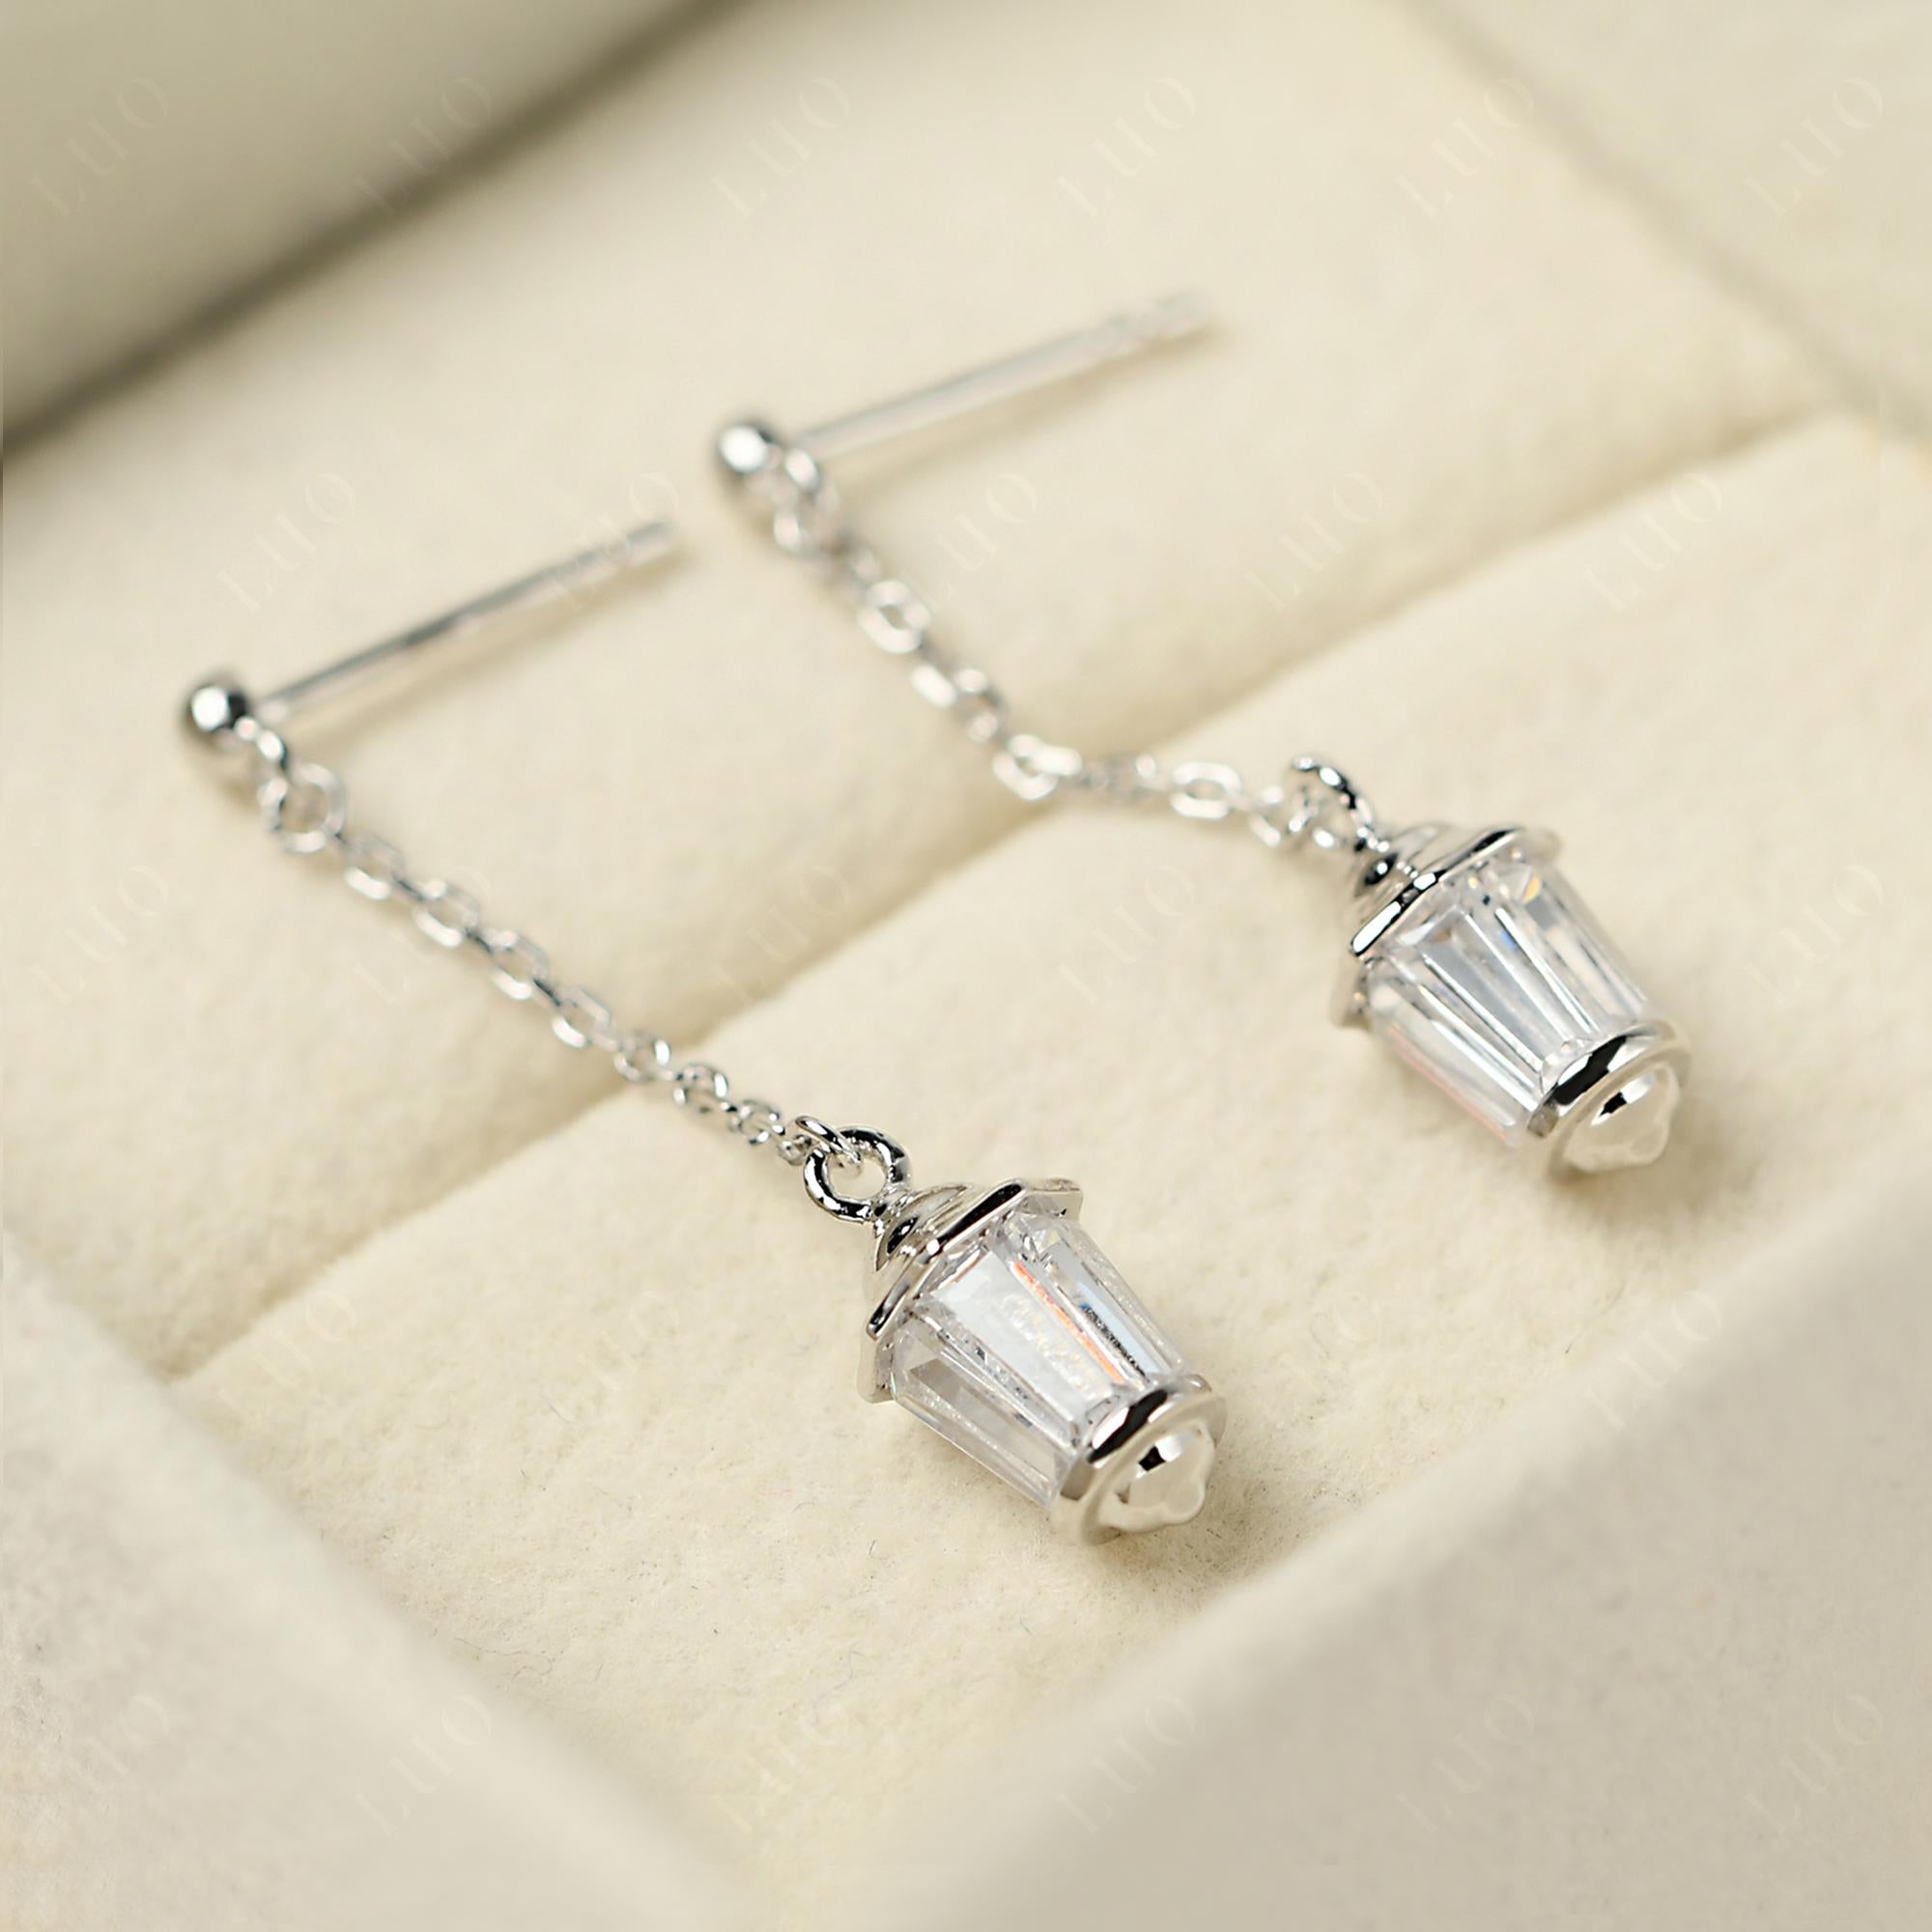 Cubic Zirconia Lantern Dangle Earrings - LUO Jewelry